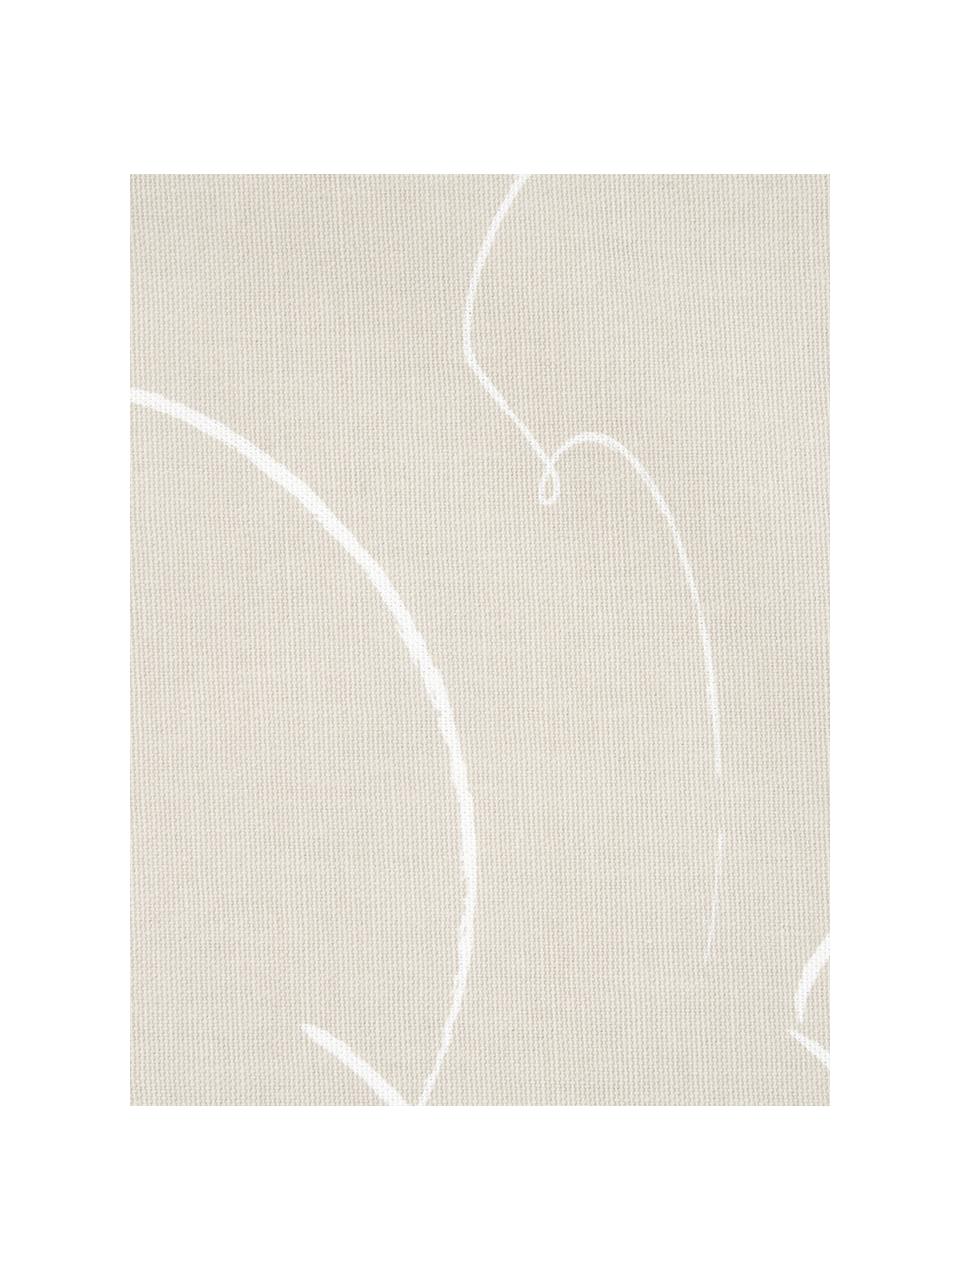 Federa arredo con motivo astratto Amino, 100% cotone, Beige/bianco, Larg. 40 x Lung. 40 cm